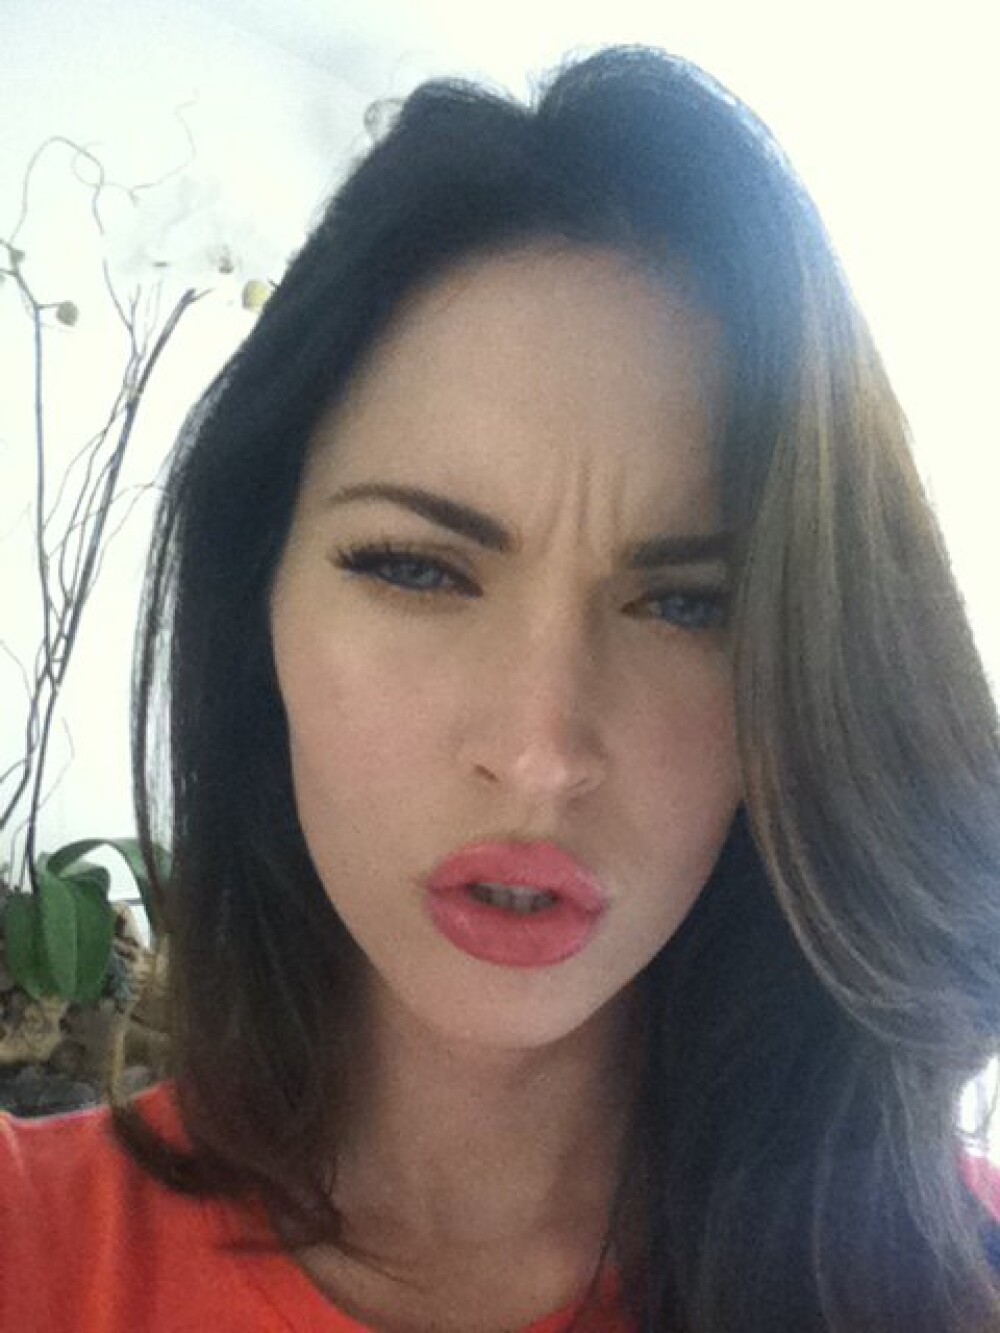 Ce a vrut Megan Fox sa demonstreze cu aceste poze? GALERIE FOTO - Imaginea 3